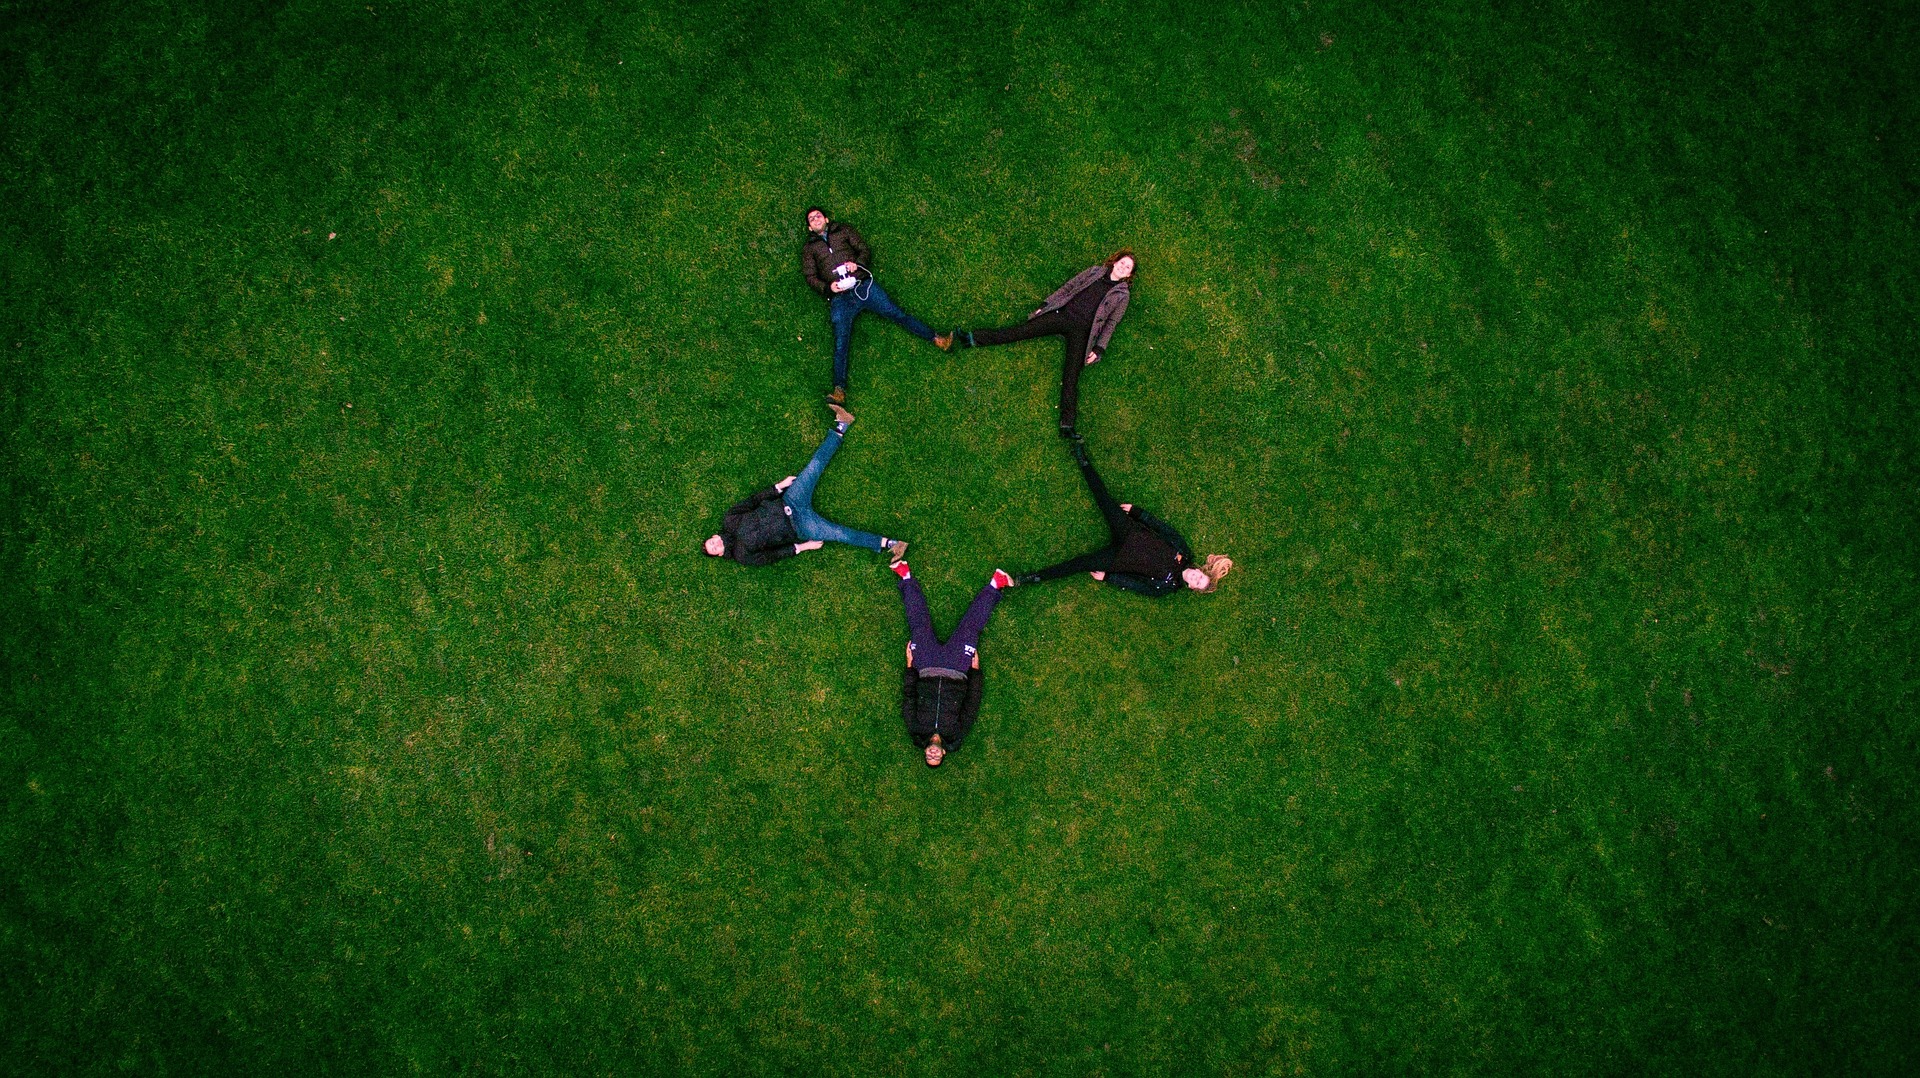 Vu du ciel, cinq amis allongés dans l'herbe forment une étoile - Image par Pexels de https://pixabay.com/fr/photos/adultes-copains-formation-gazon-1853483/